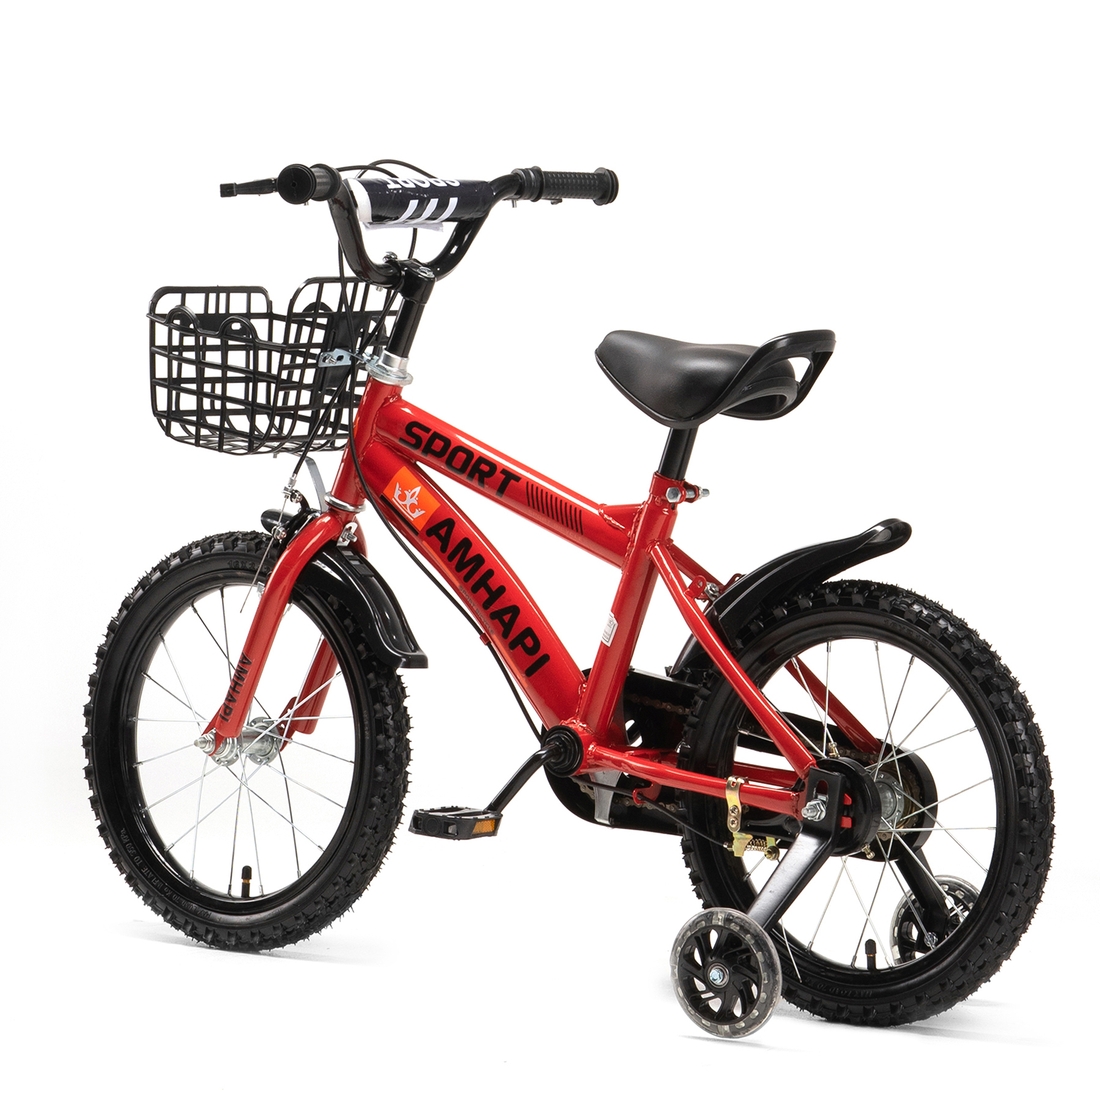 Фото Велосипед детский AMHAPI SXH1114-10 16" Красный (2000989604310)